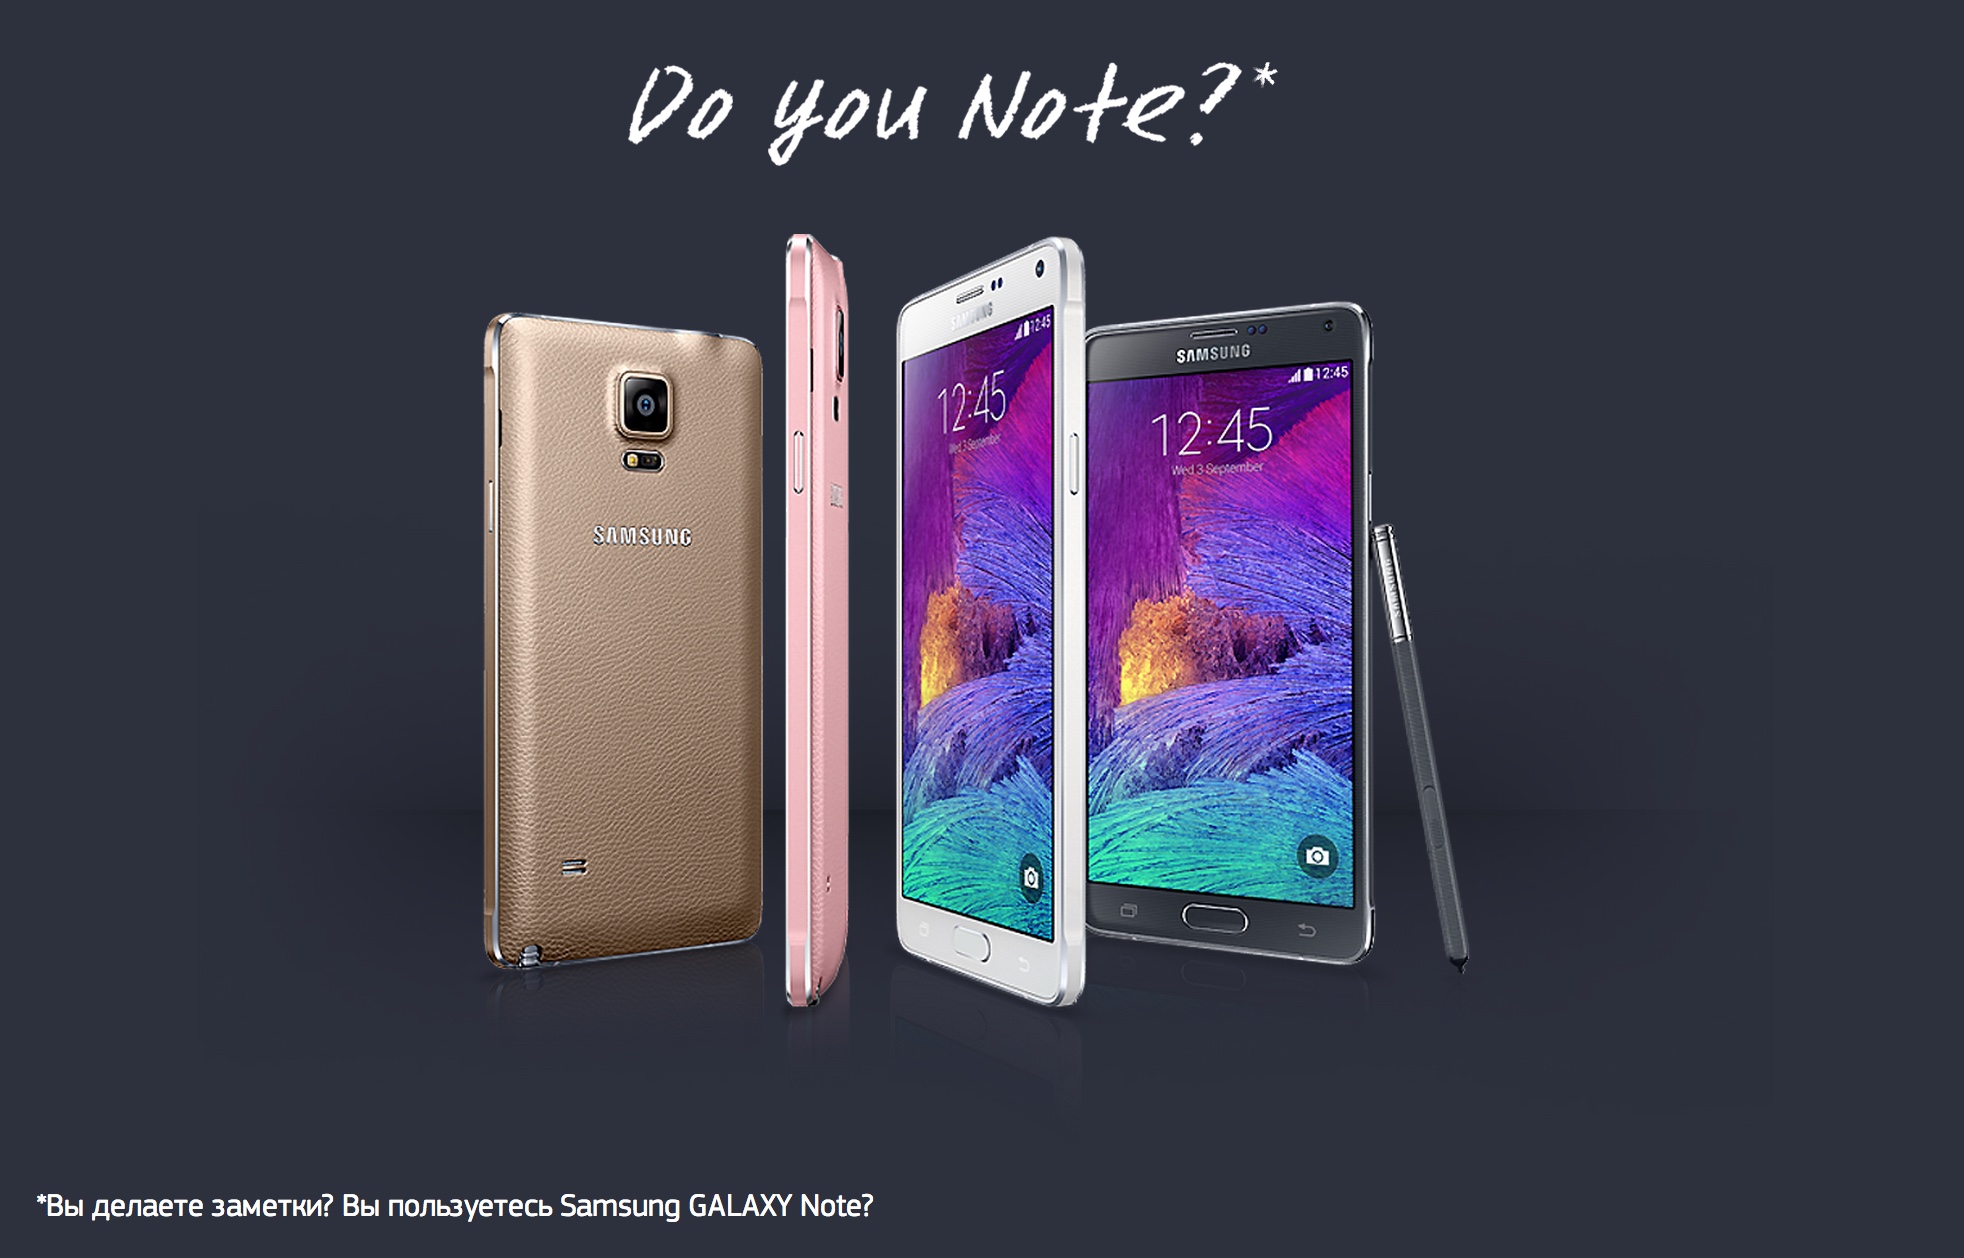 Samsung Galaxy Note 4/Почему вы не купите Note?